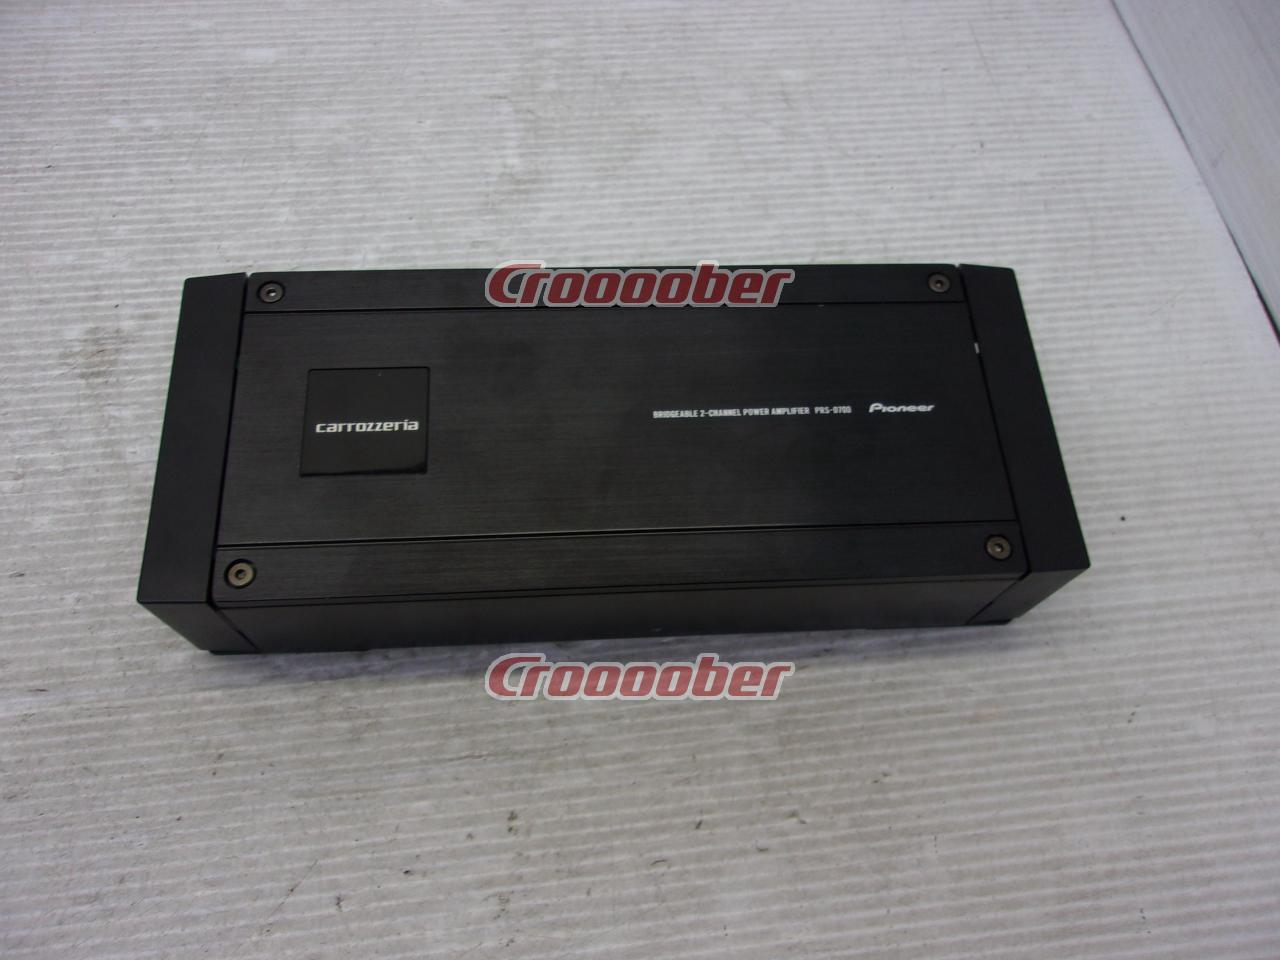 Carrozzeria PRS-D700 | Amplifier | Croooober